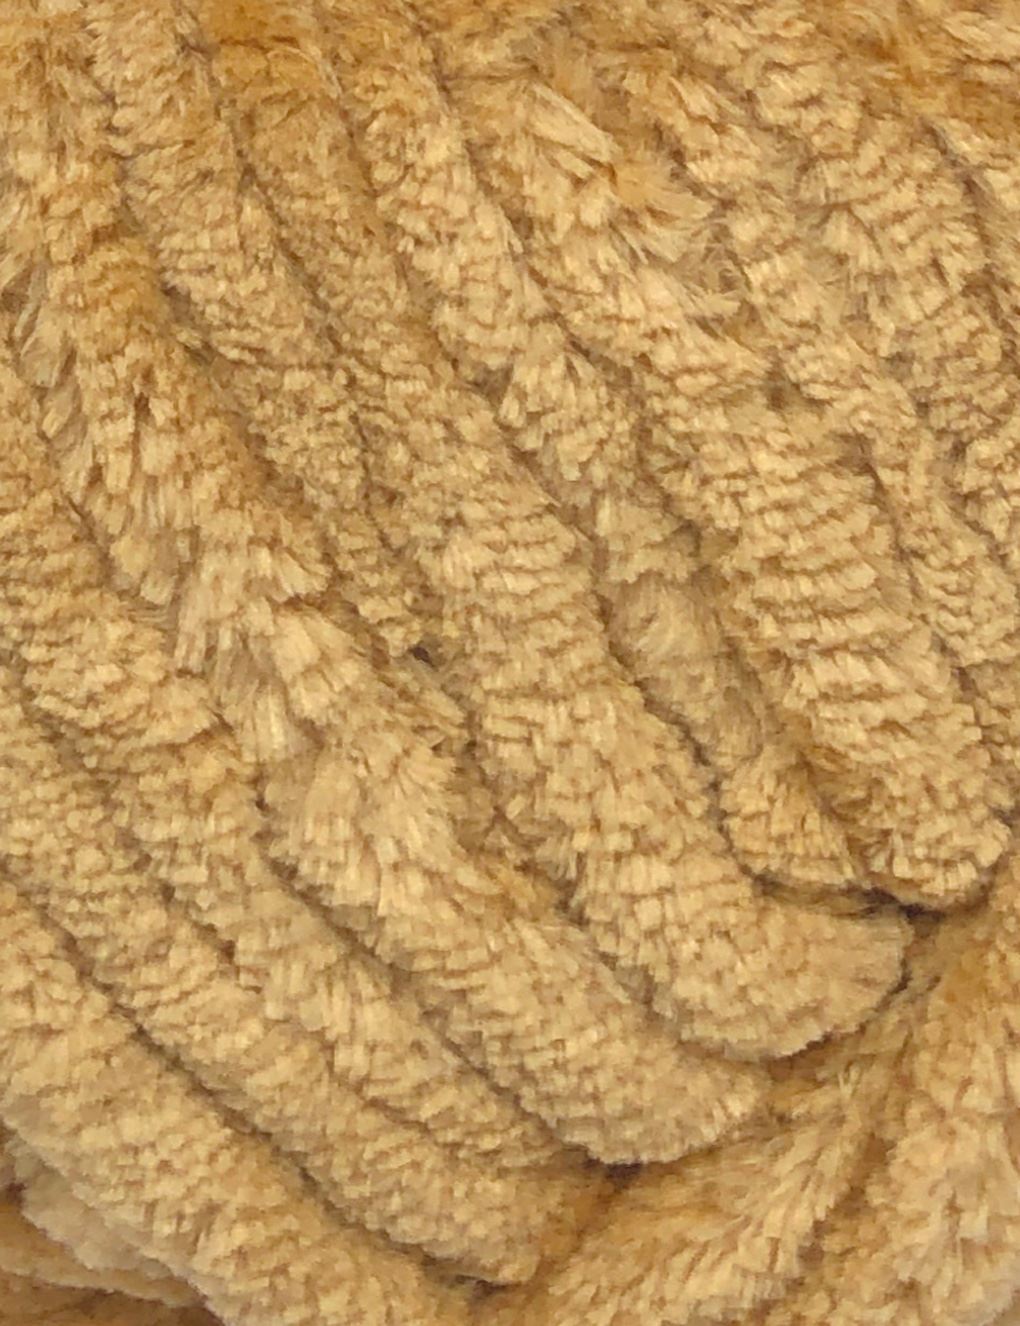 Cygnet Scrumpalicious Teddy (9009) chenille yarn - 200g